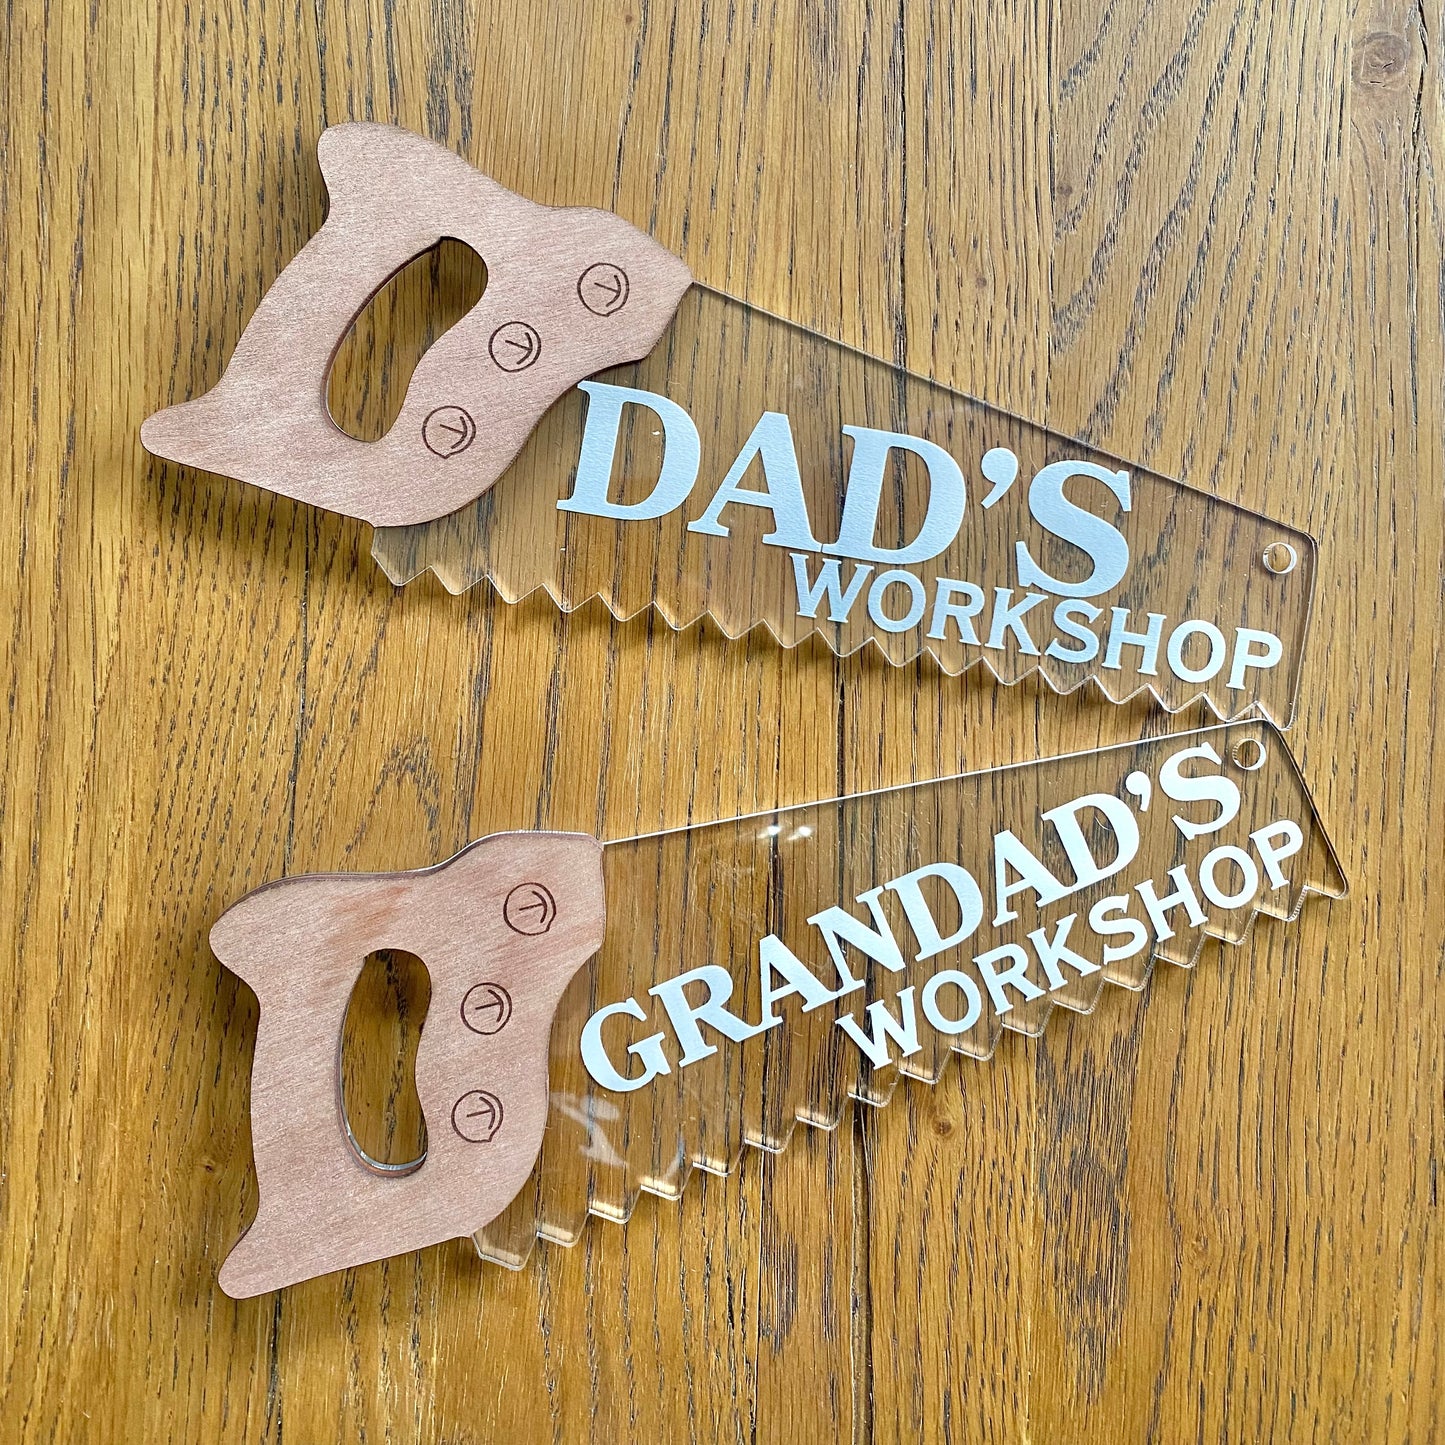 Dad’s garage/shed/workshop saw sign